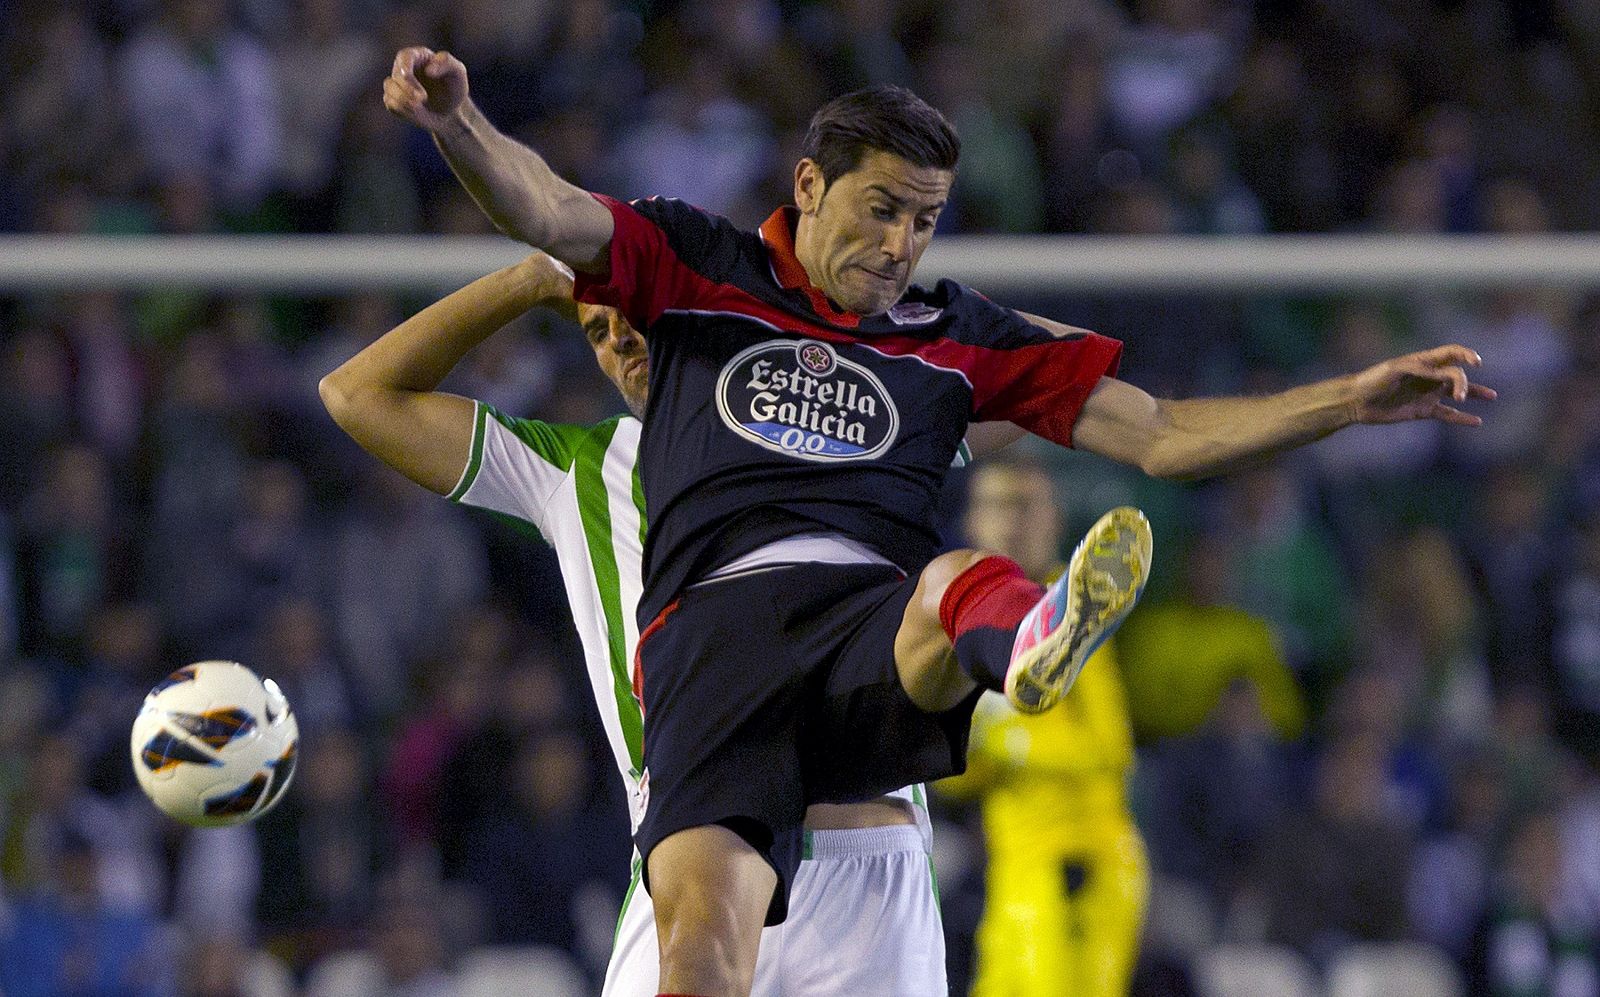 El defensa del Real Betis, Antonio Amaya (detrás), lucha el balón con "Riki"